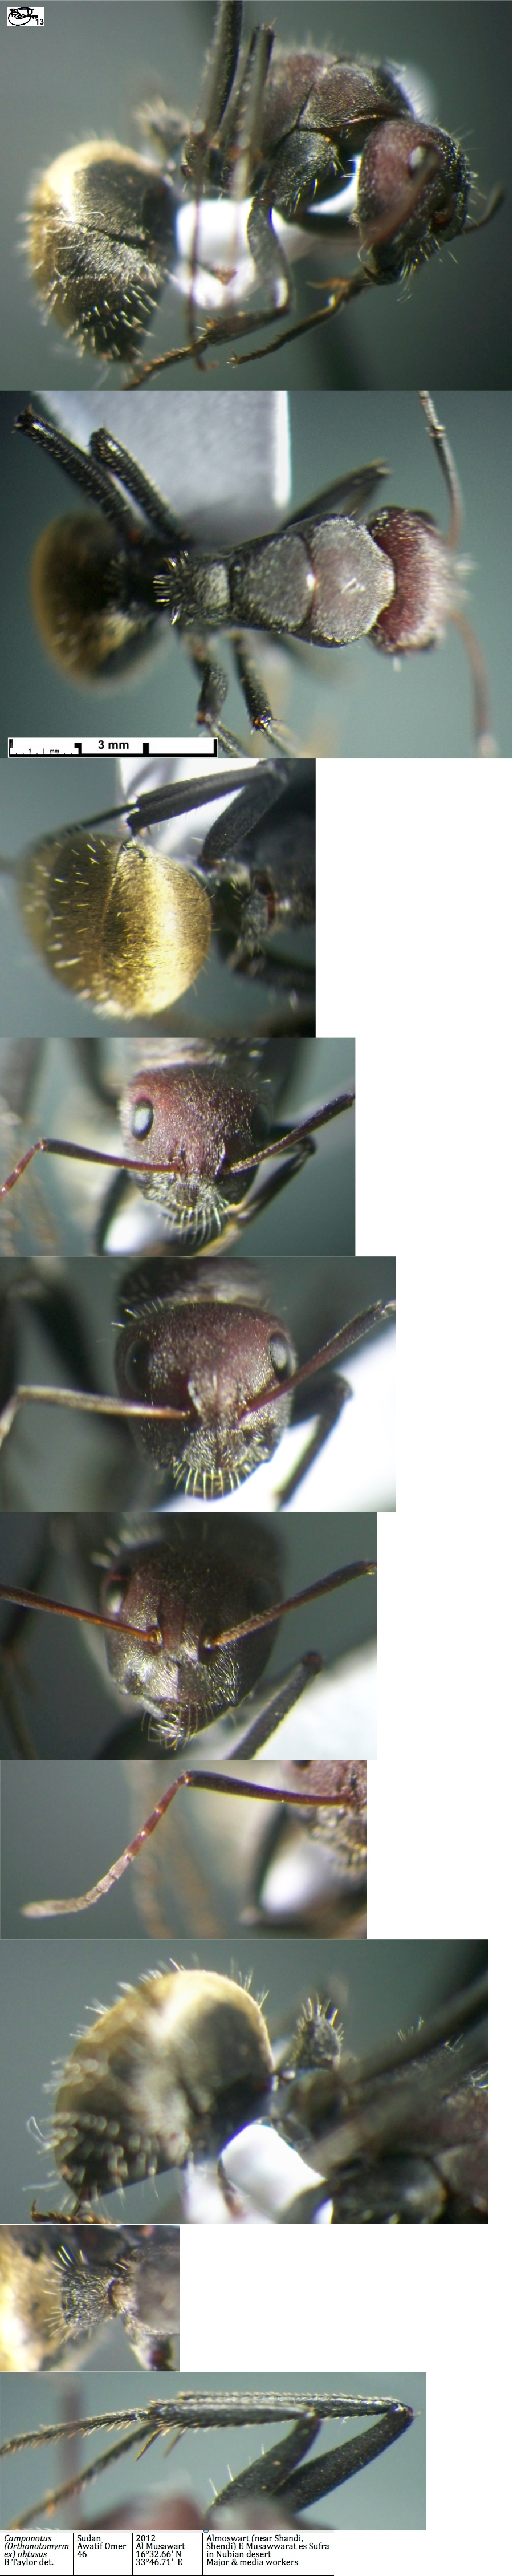 {Camponotus obtusus minor}